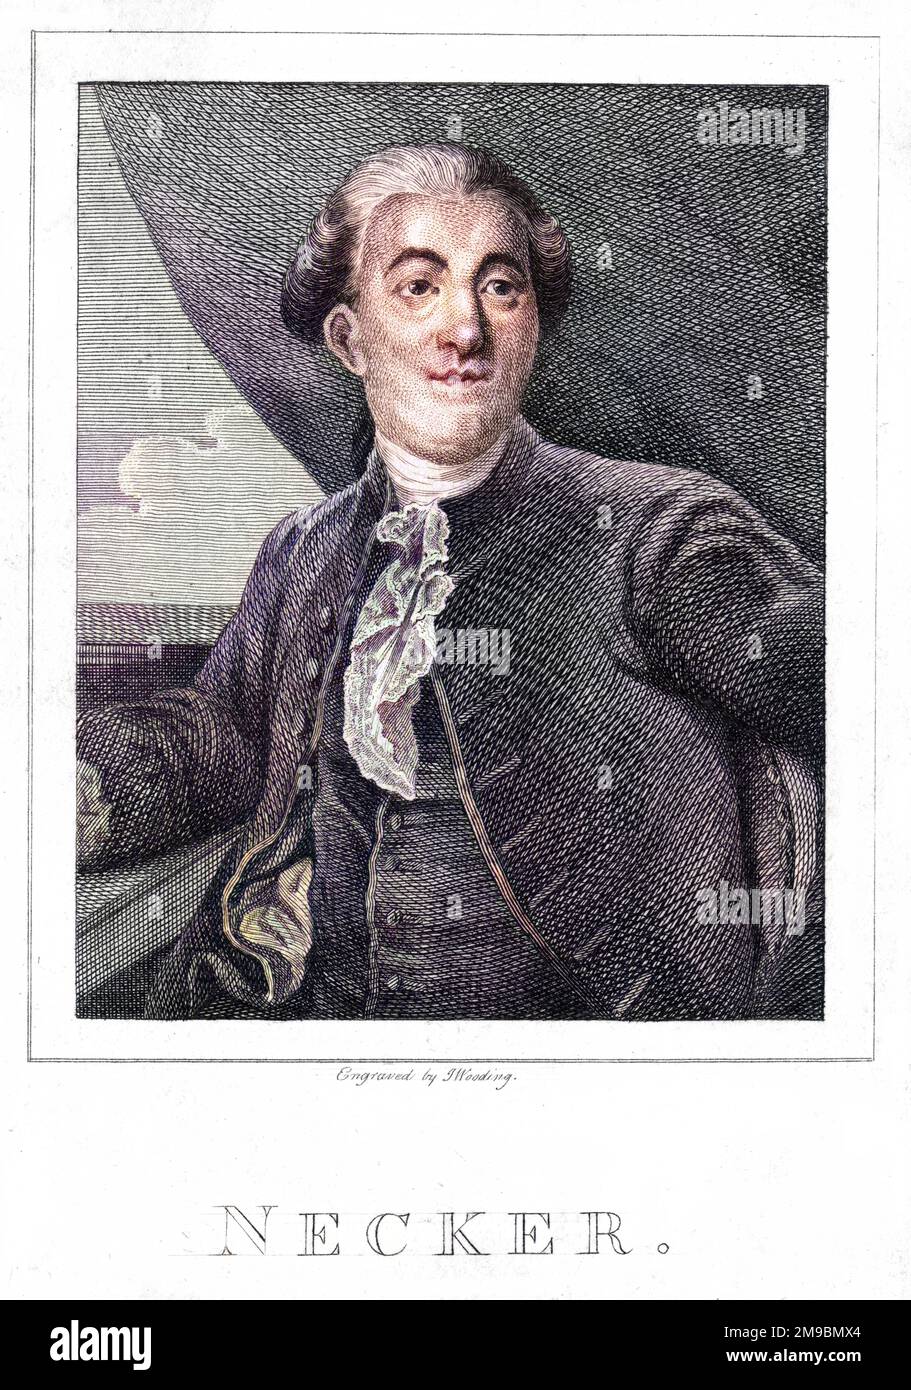 JACQUES NECKER (1732-1804), französischer Finanzier und Staatsmann aus der Schweiz, dargestellt im Jahr 1789 - dem Jahr der Revolution, in dem seine Finanzreformen nicht gestoppt wurden. Stockfoto